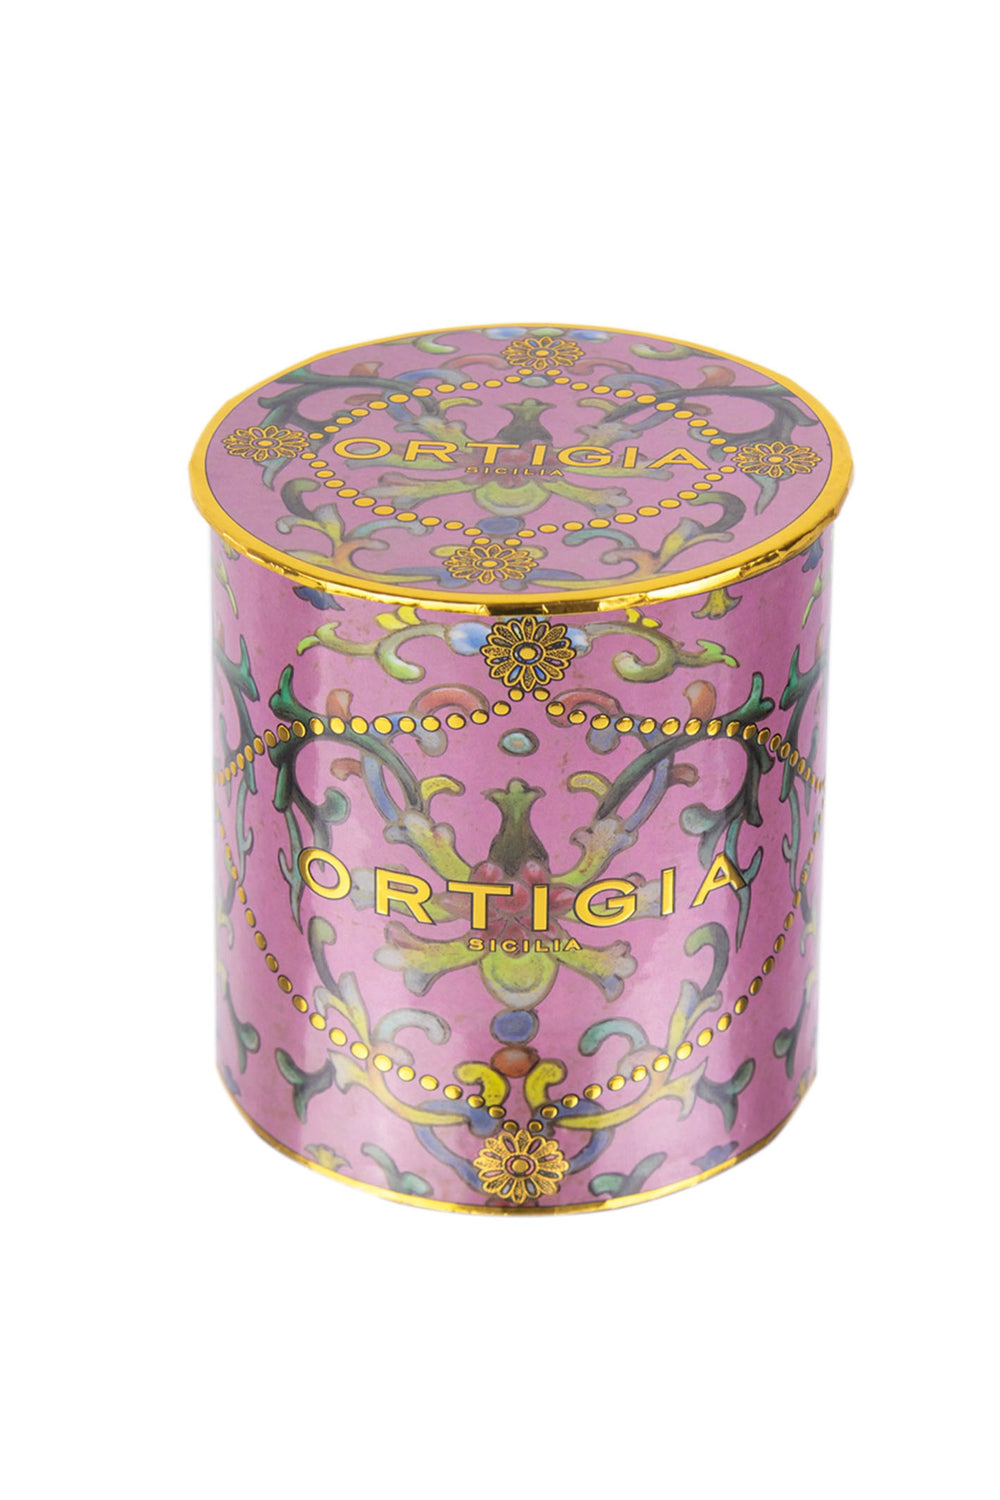 Ortigia Sicilia Medium Aragona Perfume Decorated Candle - Olivia Grace Fashion